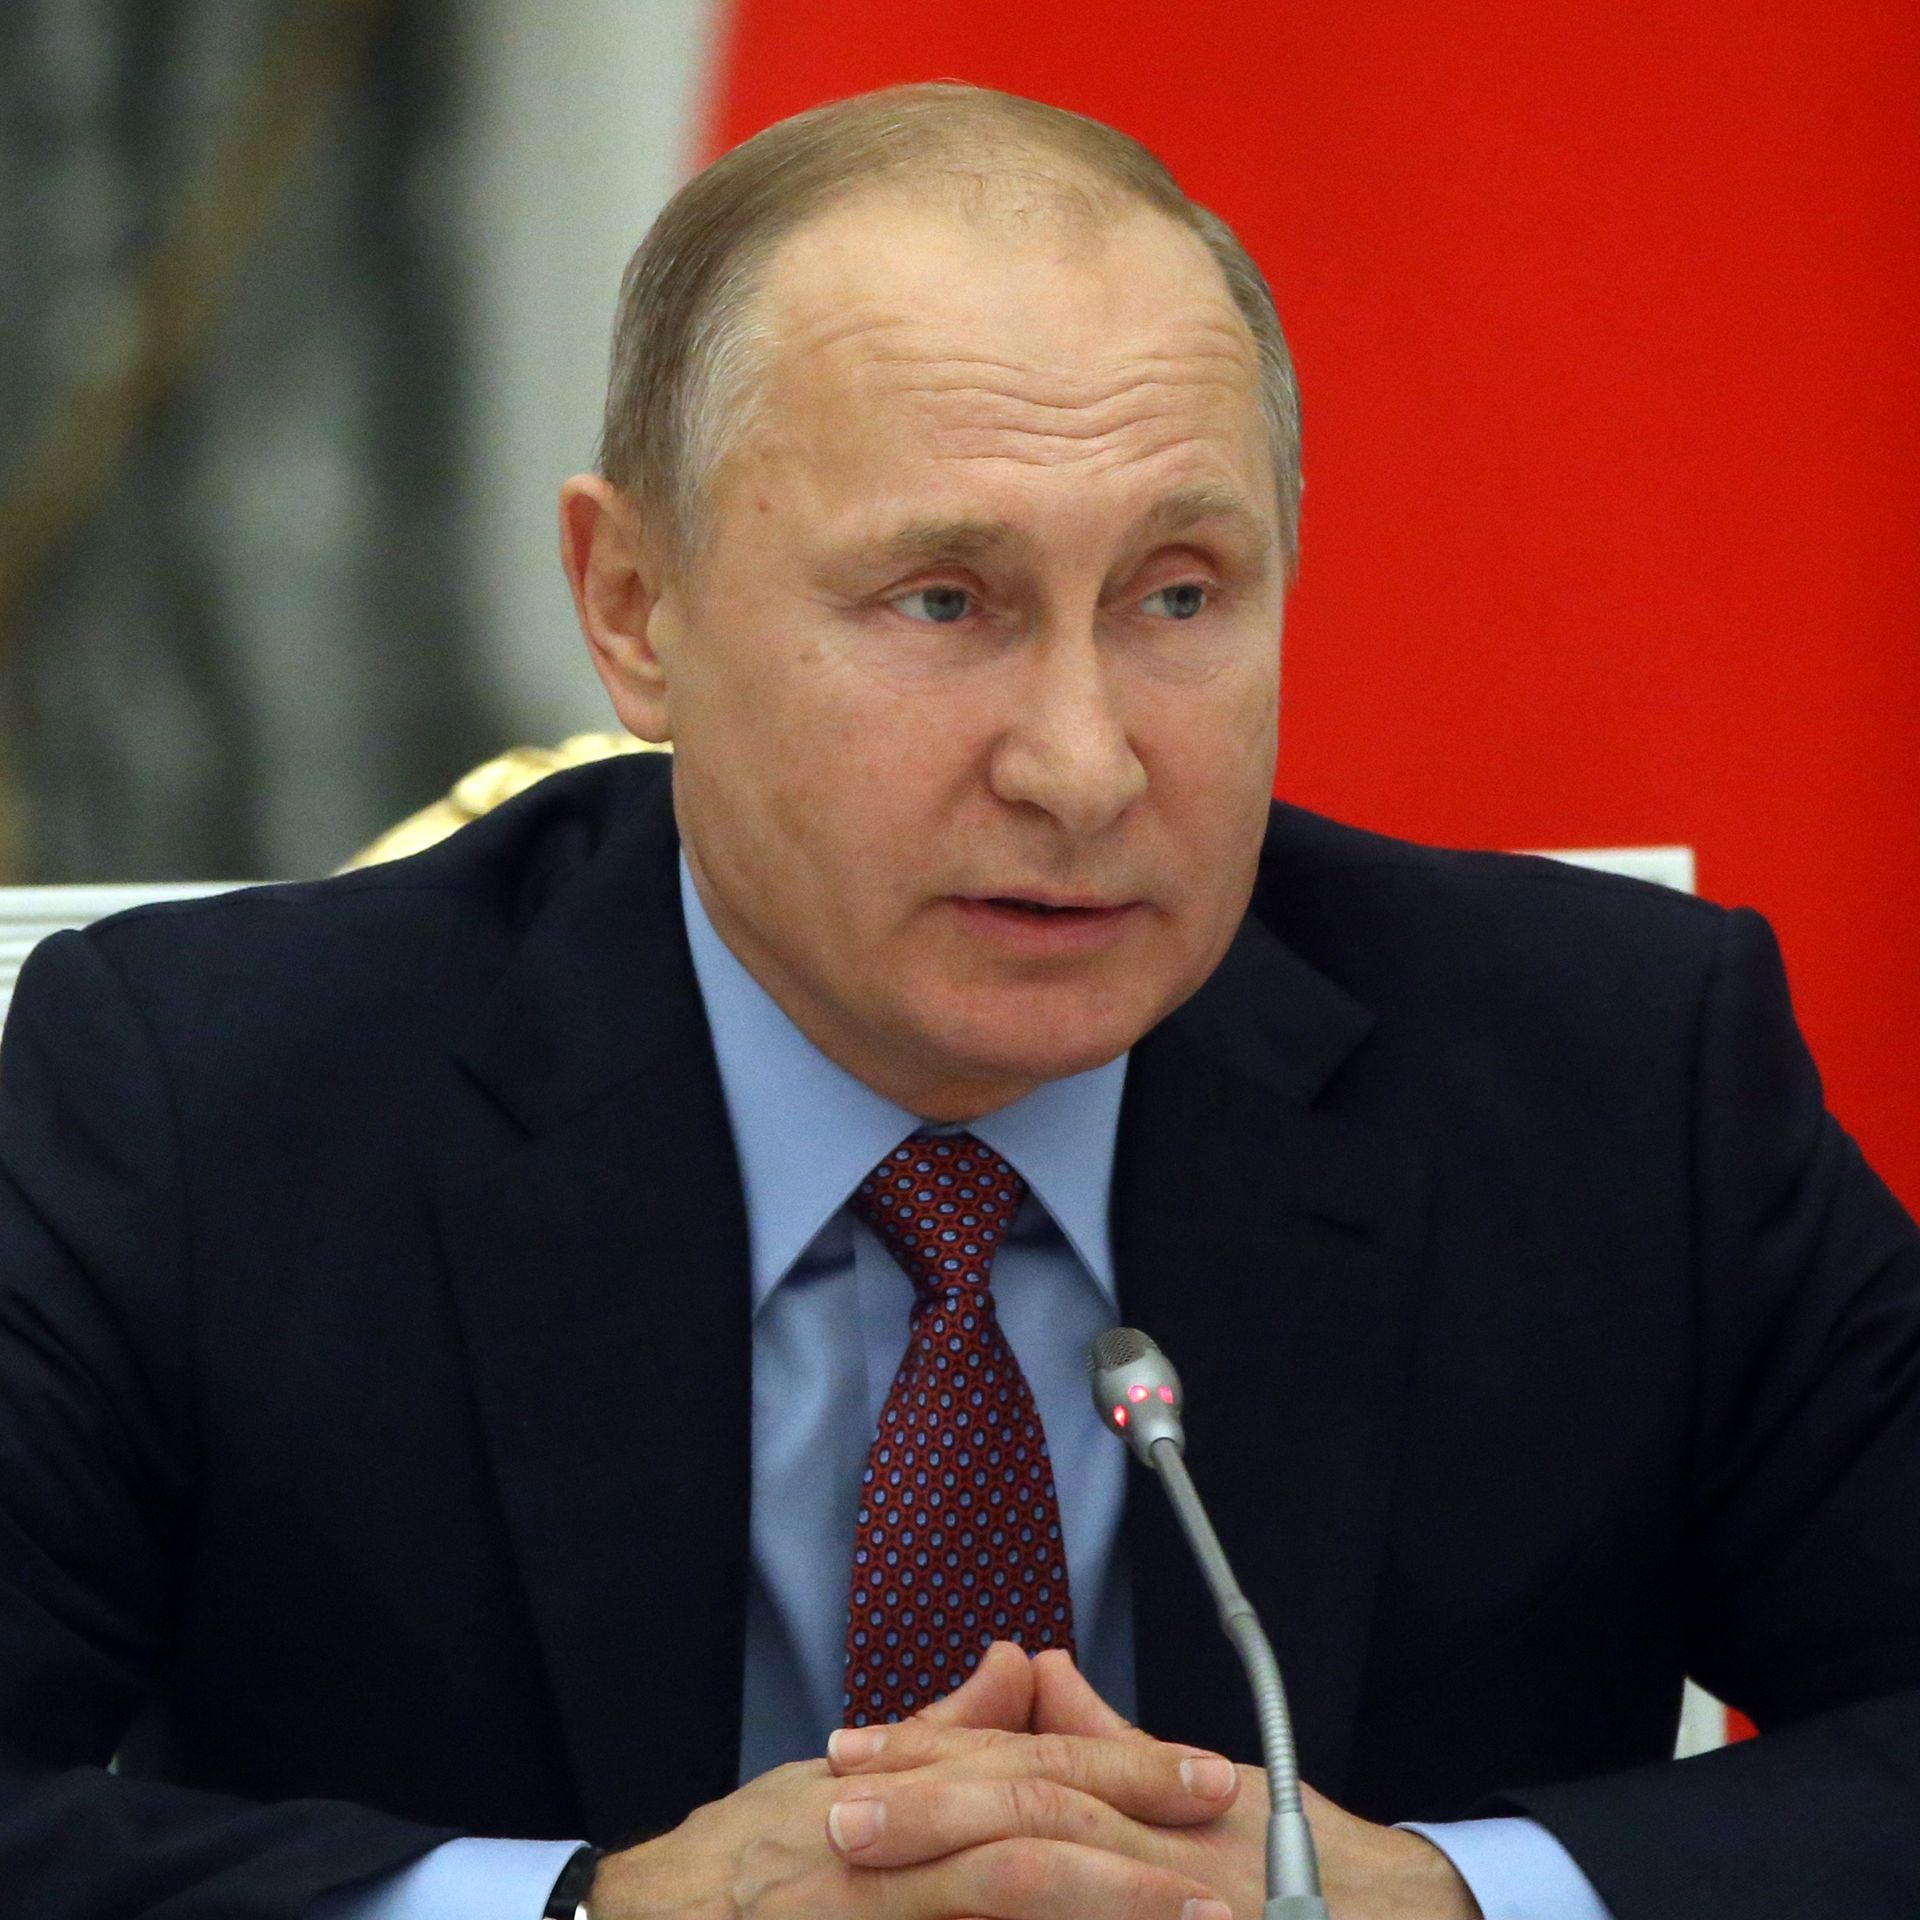 Vladimir Putin seated at microphone during meeting